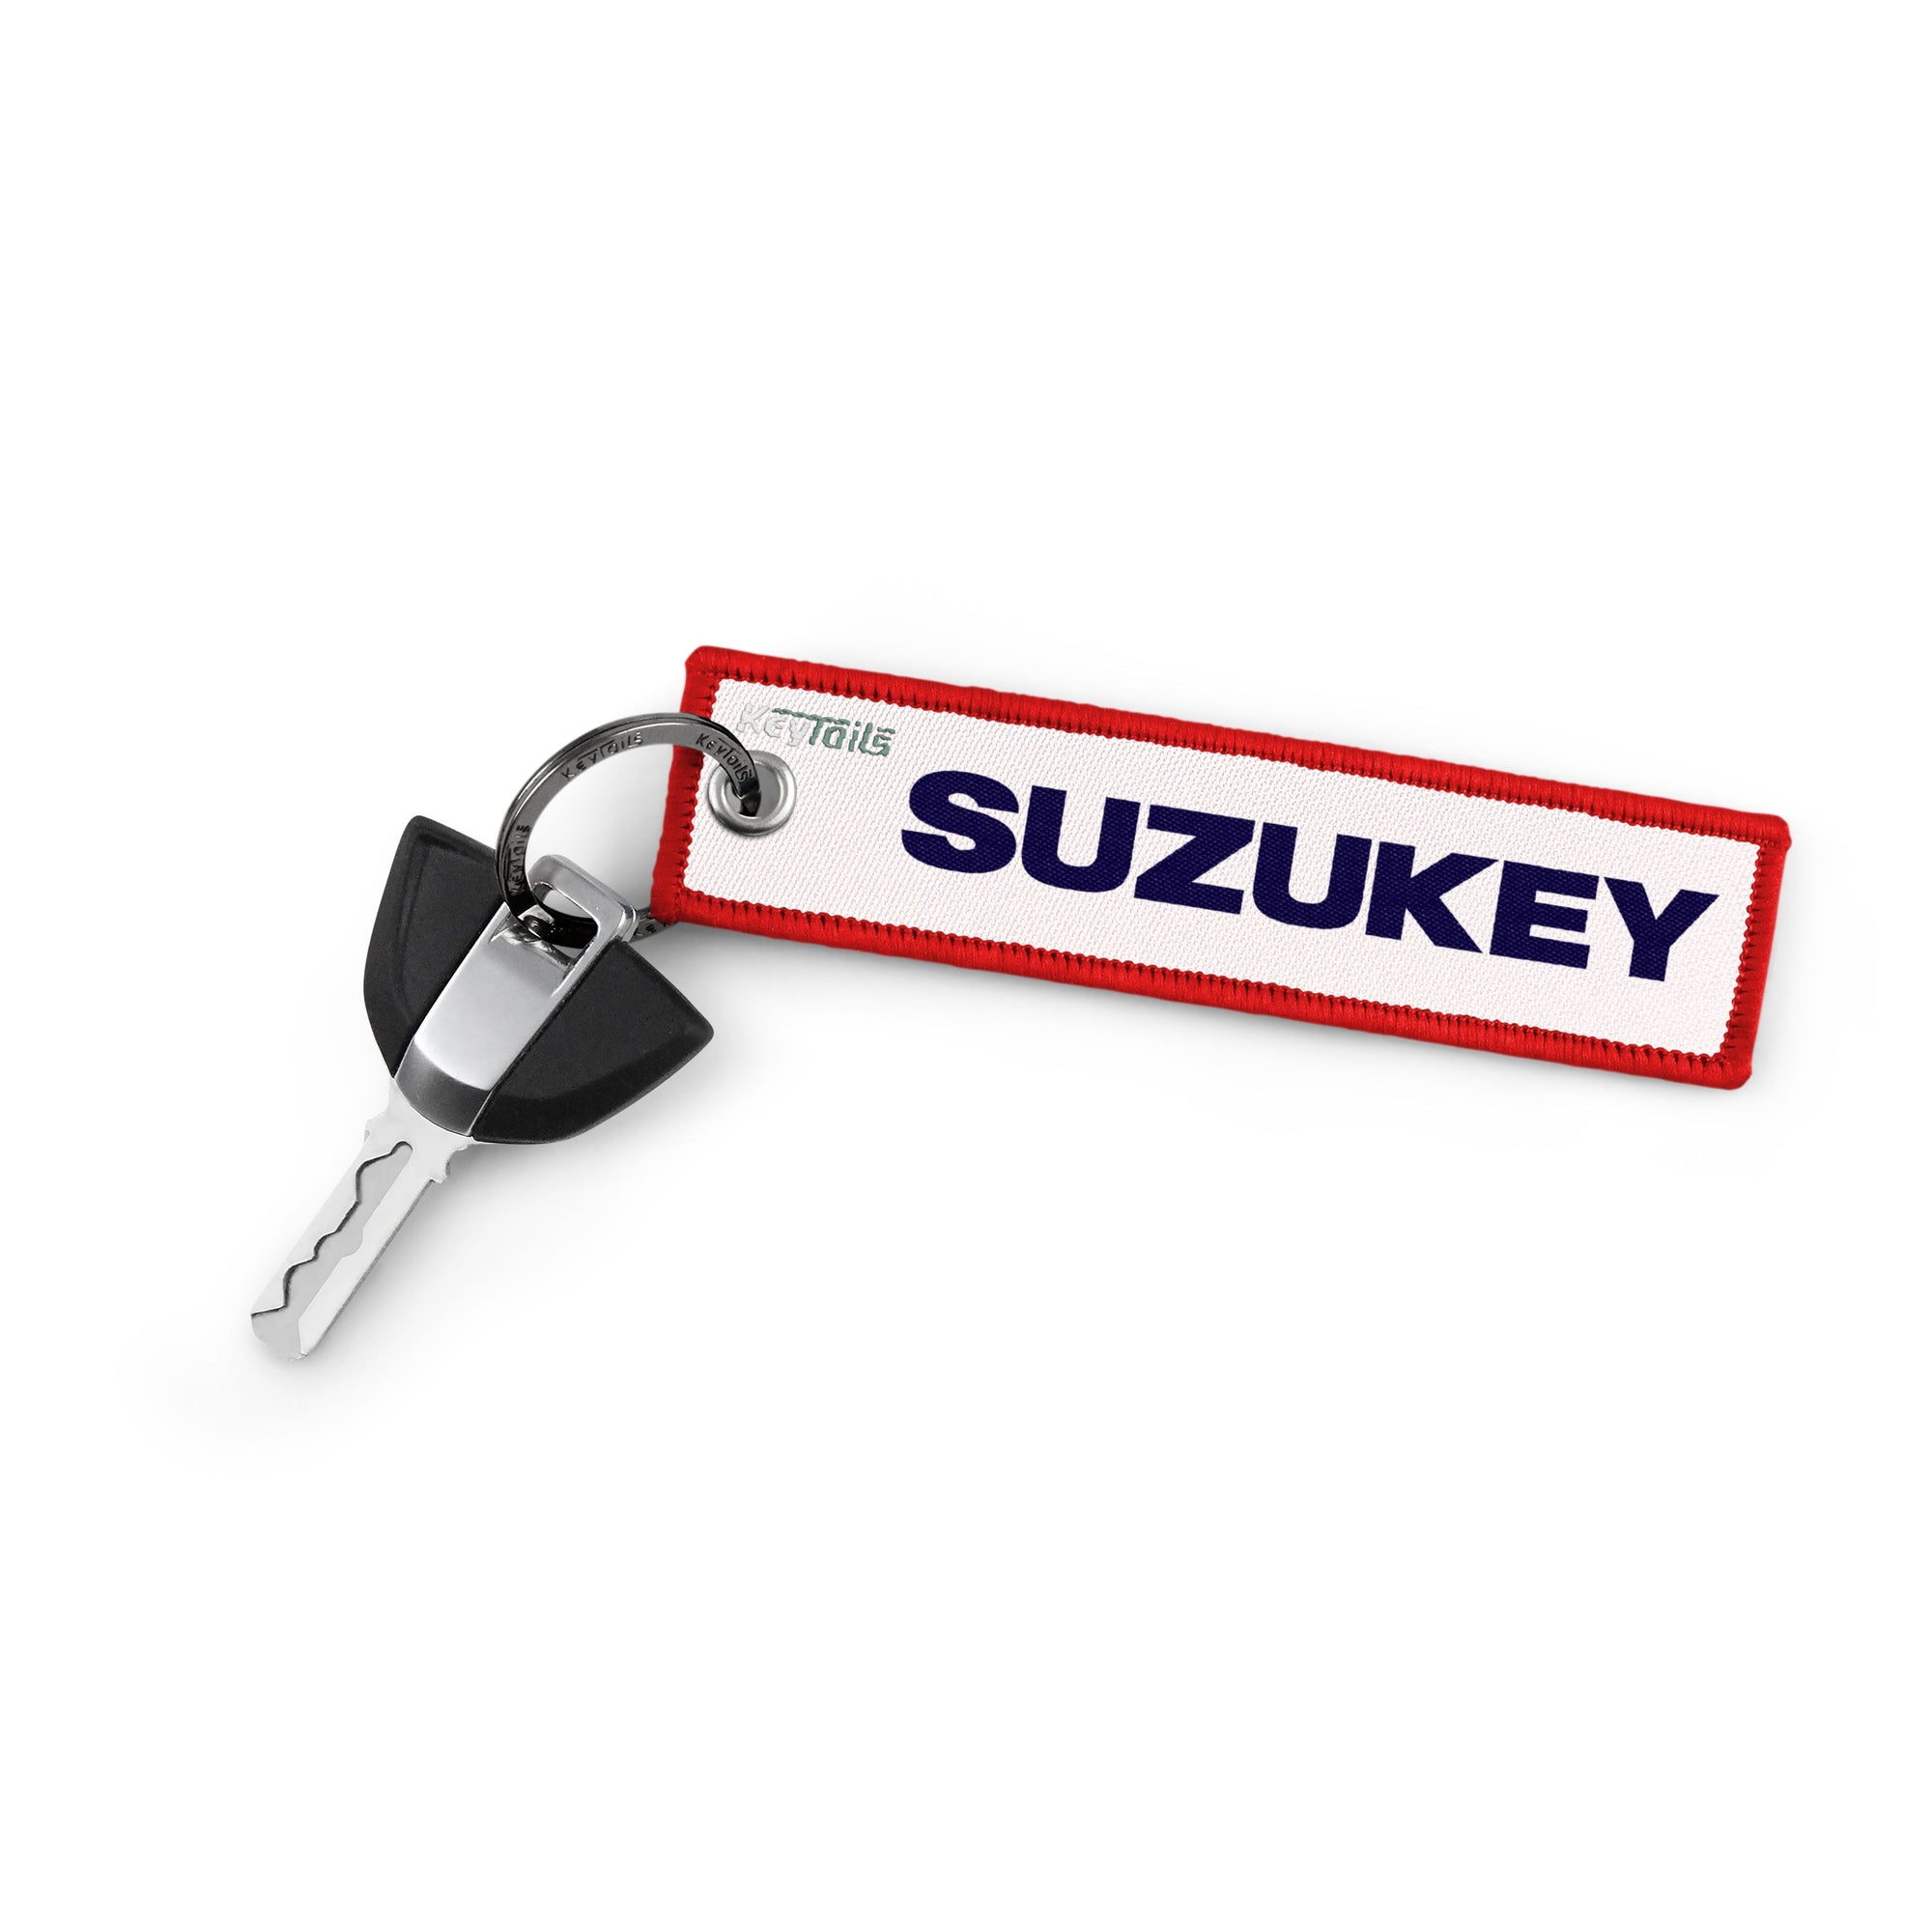 SUZUKEY Keychain, Key Tag - Red